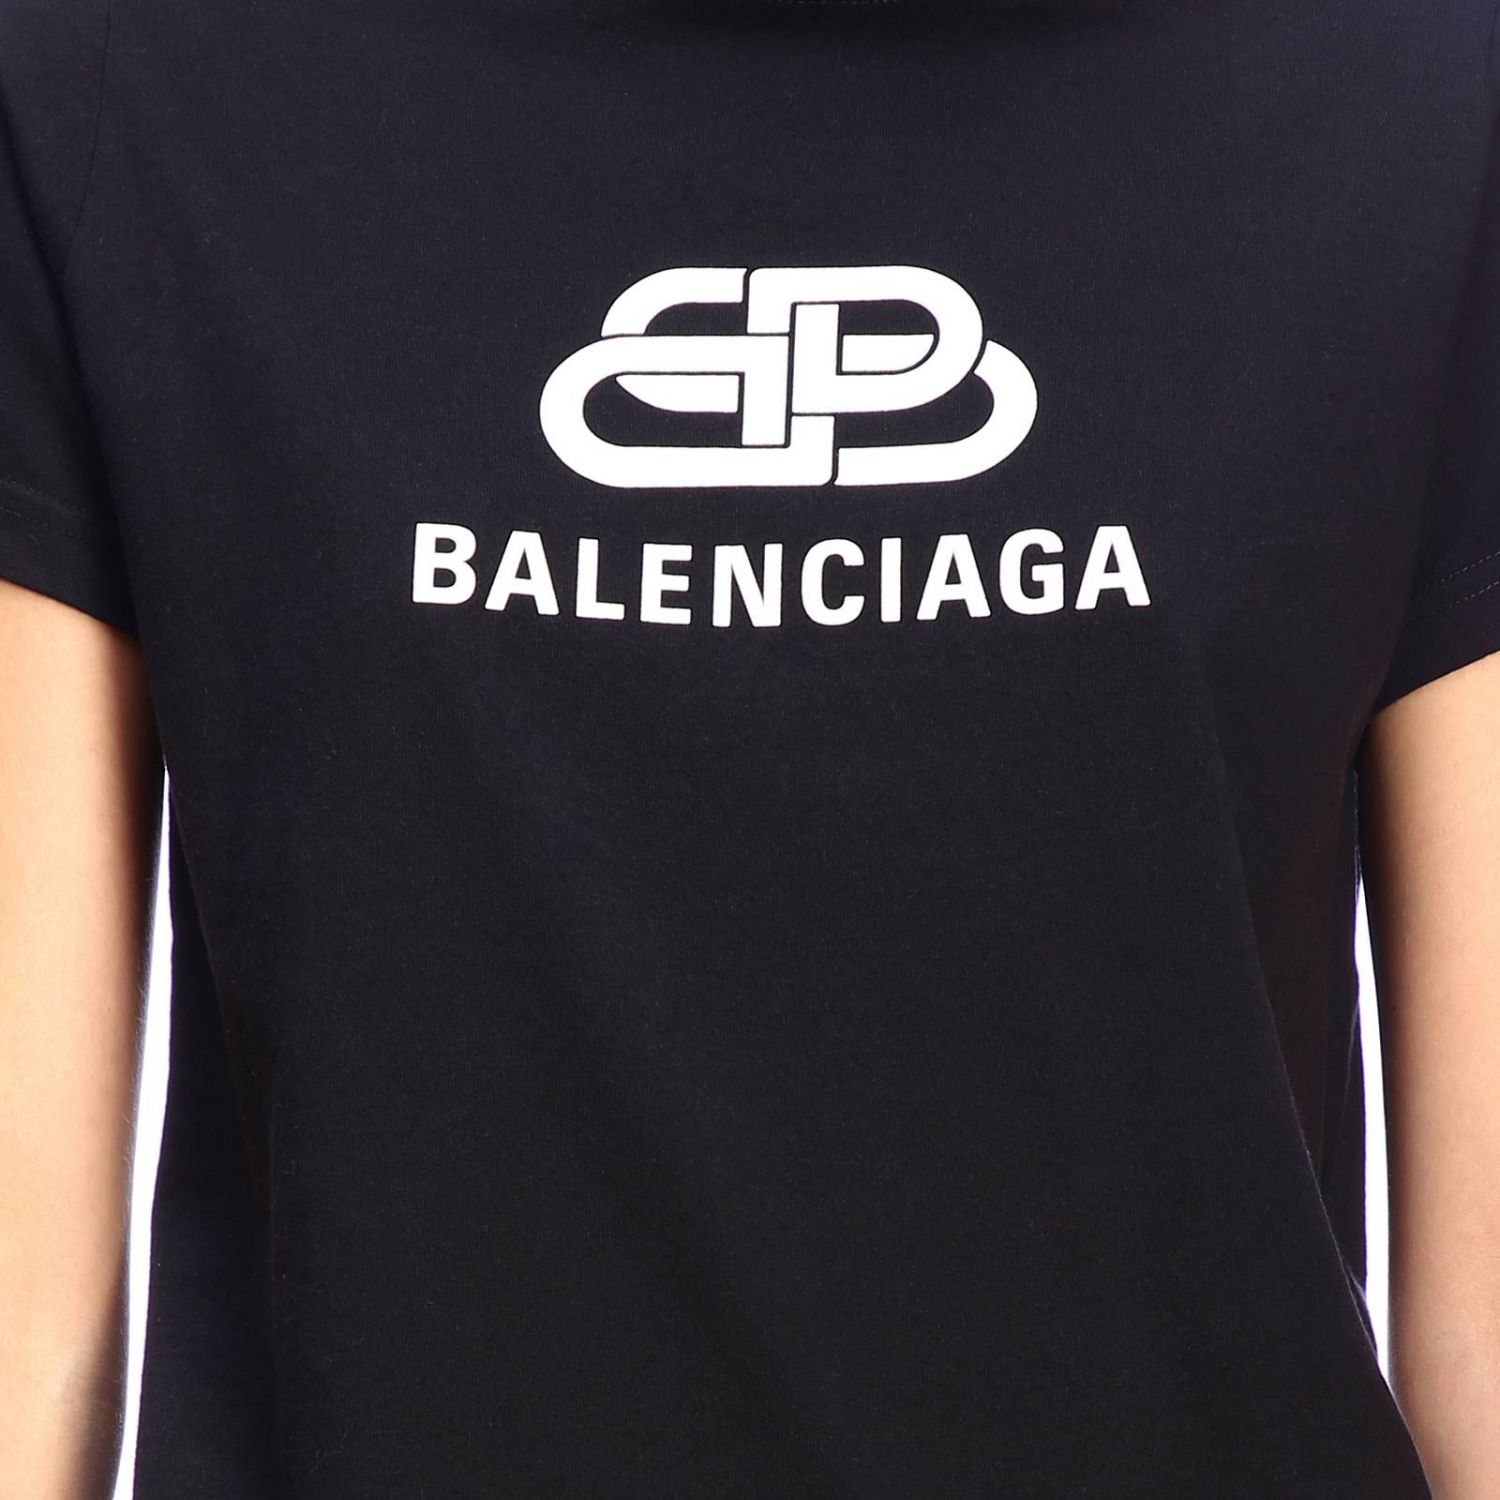 Camiseta slim de Balenciaga en jersey de algodón elástico con logo maxi | Camiseta Balenciaga